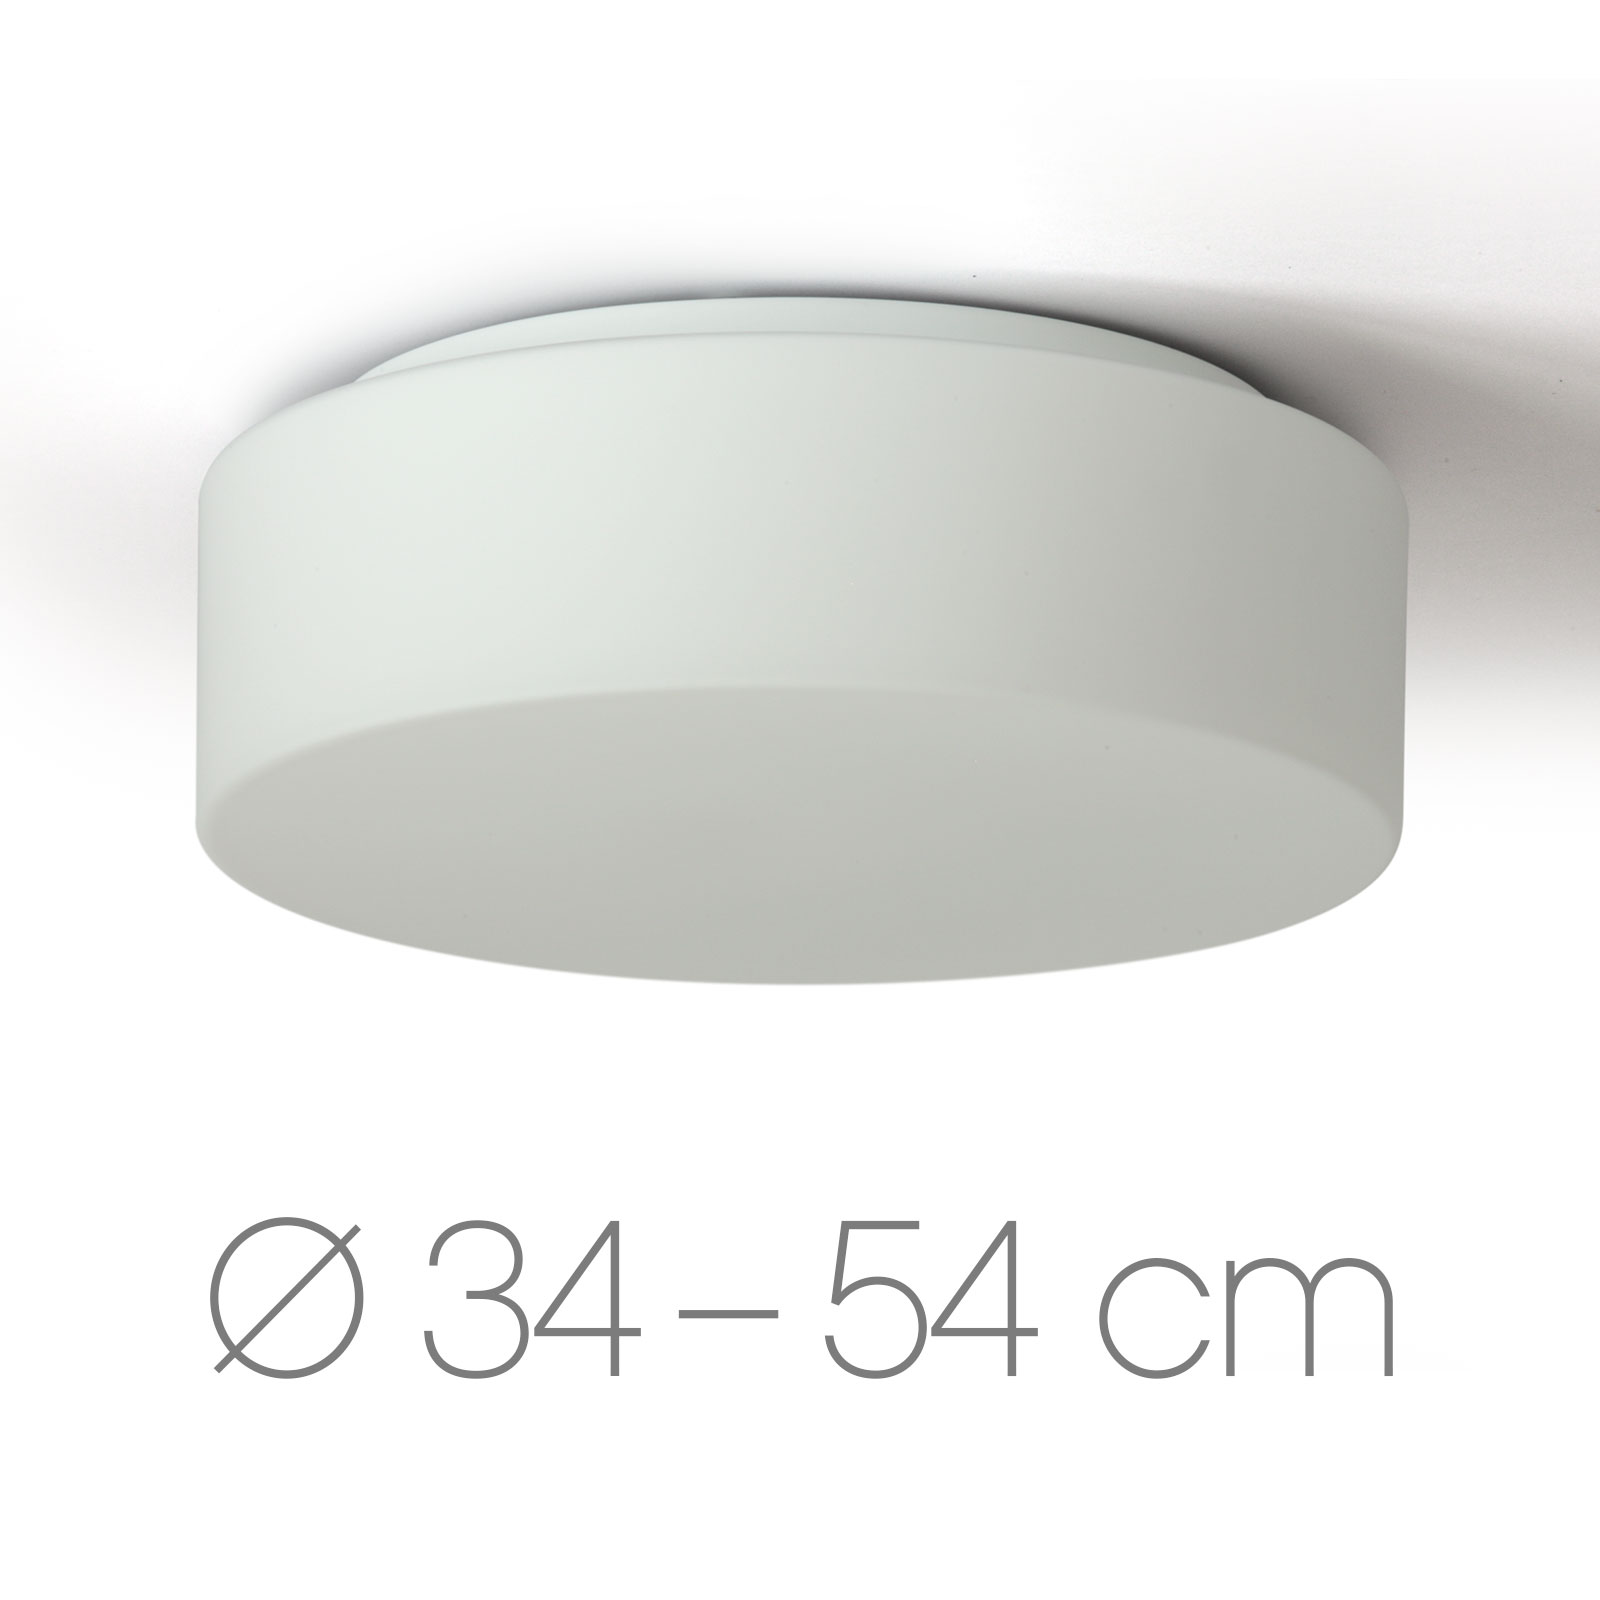 Schlichte Scheibe: Deckenleuchte Opalglas ERIK, Ø 34 bis 54 cm: Die scheibenförmige Deckenleuchte (hier mit Ø 34 cm, Größe S) überzeugt mit hochwertigem, samtig-mattem Opalglas